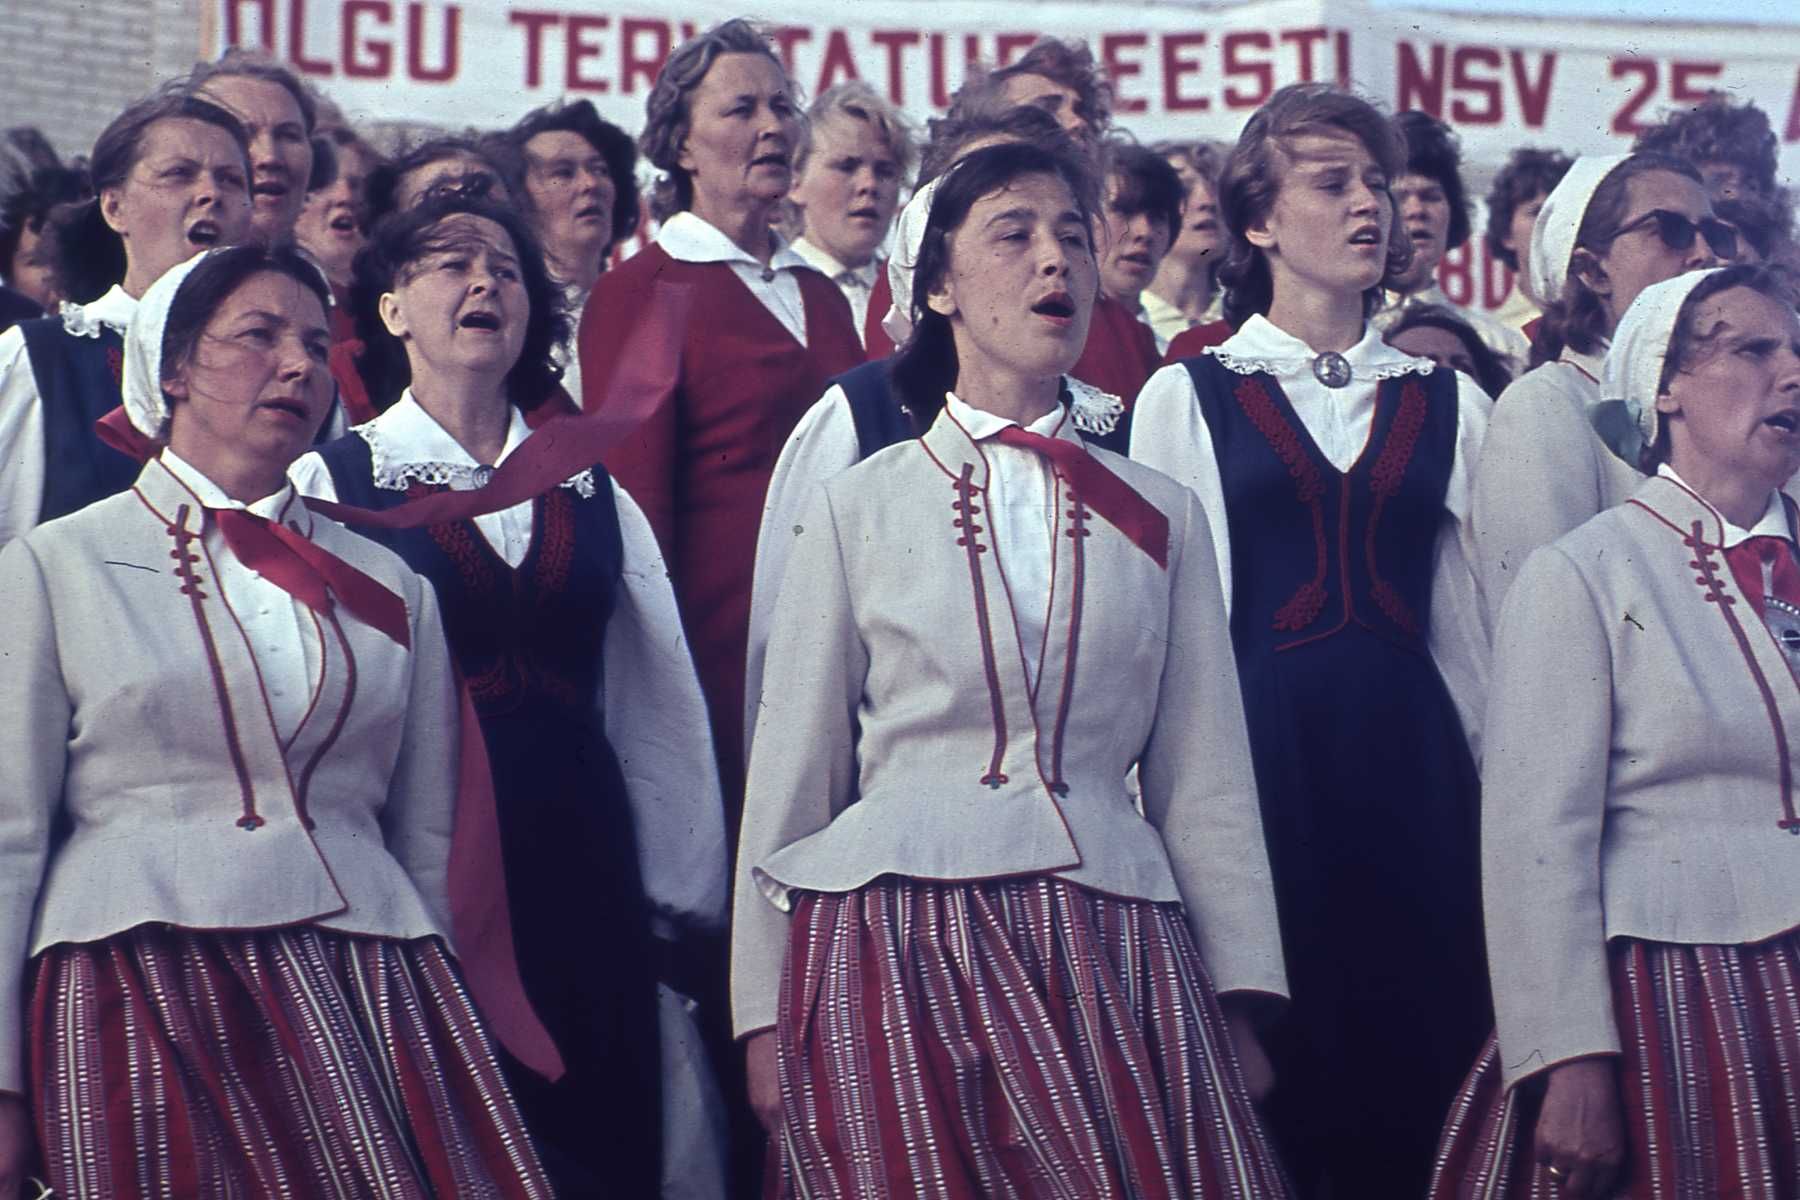 Ants Nilsoni fotokogu negatiivid.  Tartu linna ja rajooni laulupäev Tähtvere lauluväljakul.  Tartu, 1965.